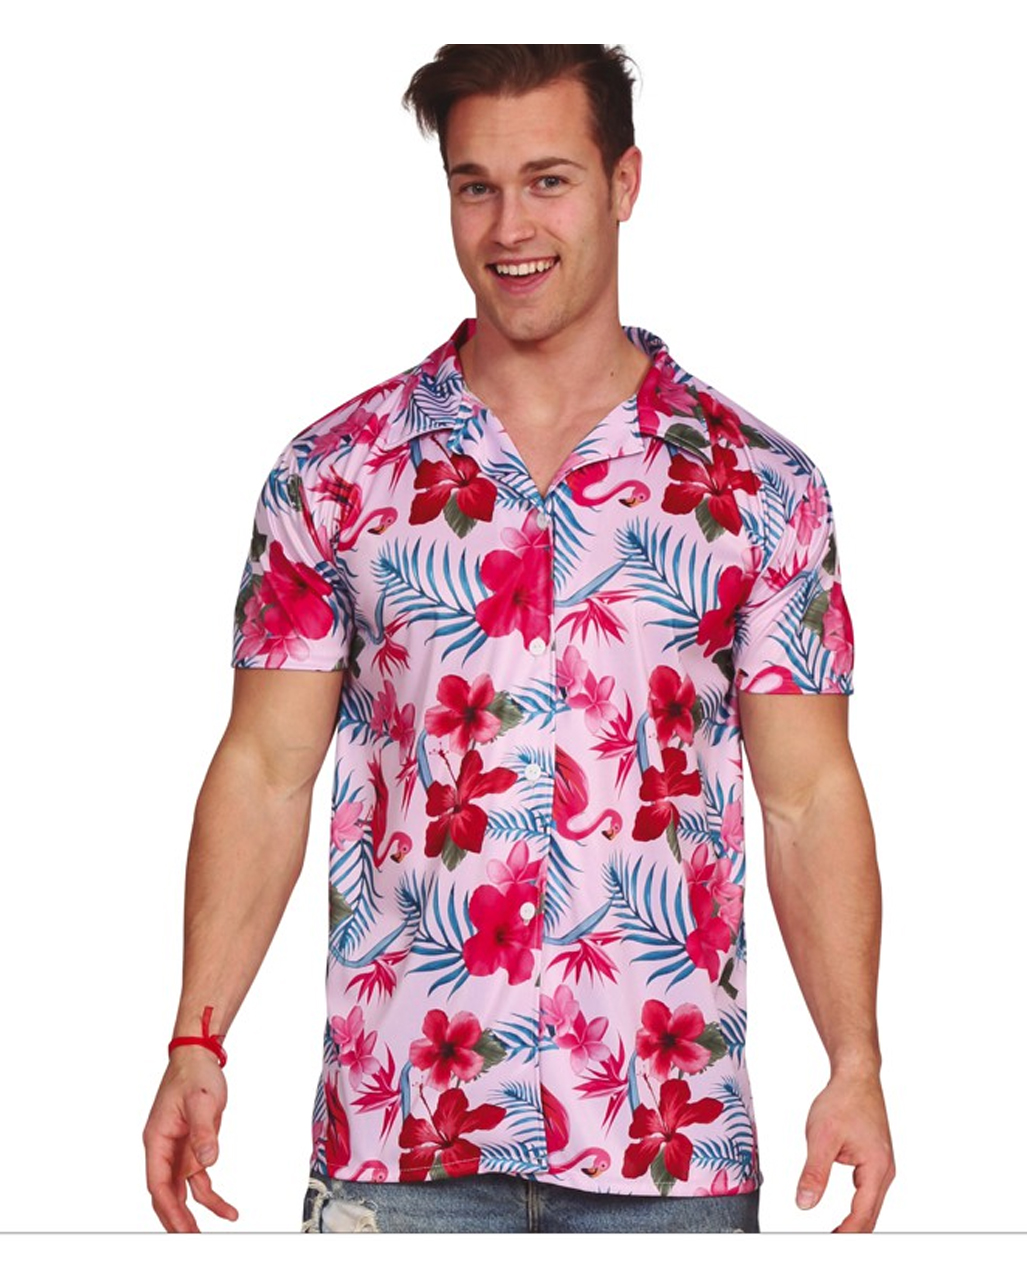 Turquoise Flamingo - Women's Hawaiian Shirt